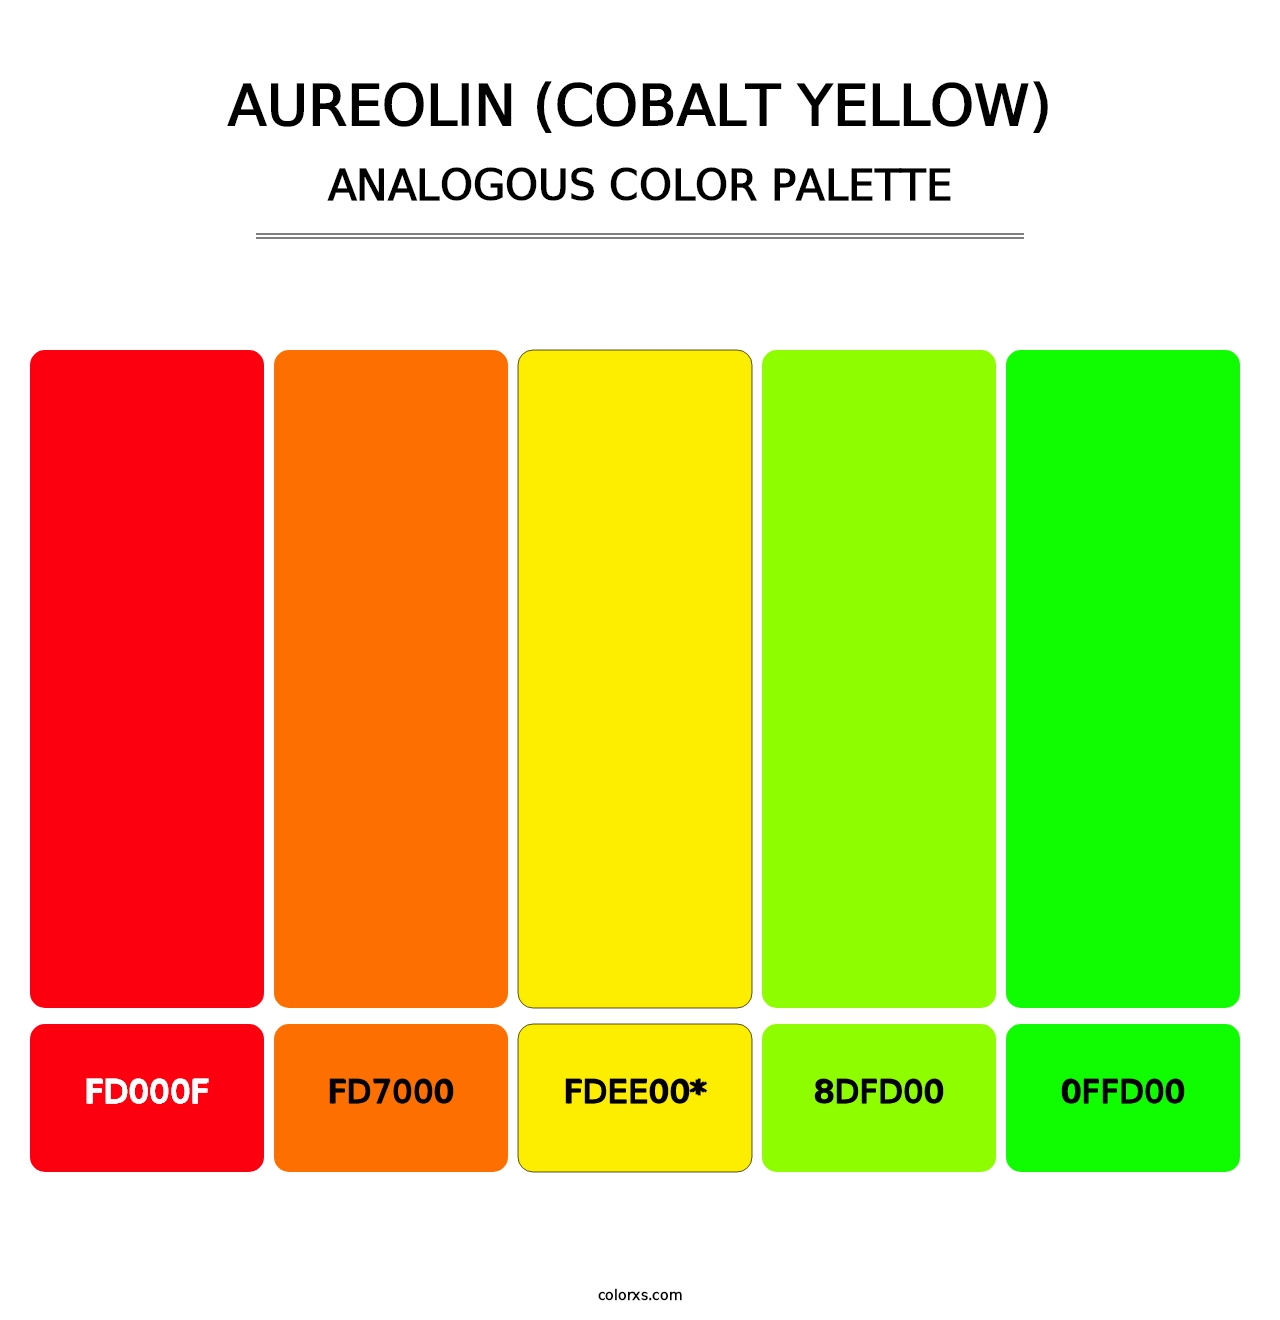 Aureolin (Cobalt Yellow) - Analogous Color Palette